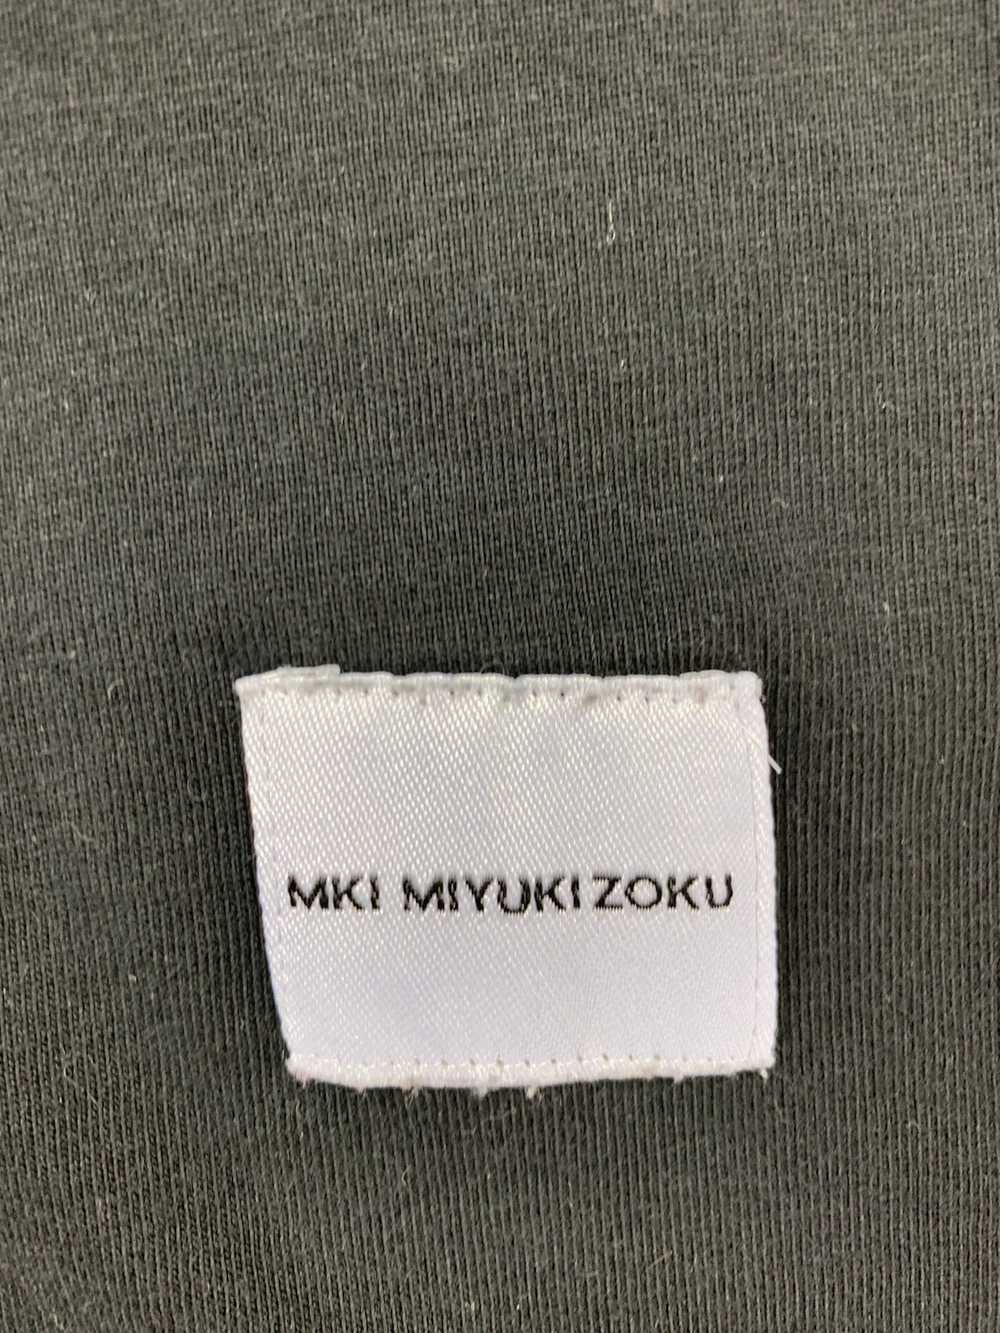 Mki Miyuki-Zoku Mki Miyuki Zoku T Shirt Japanese … - image 5